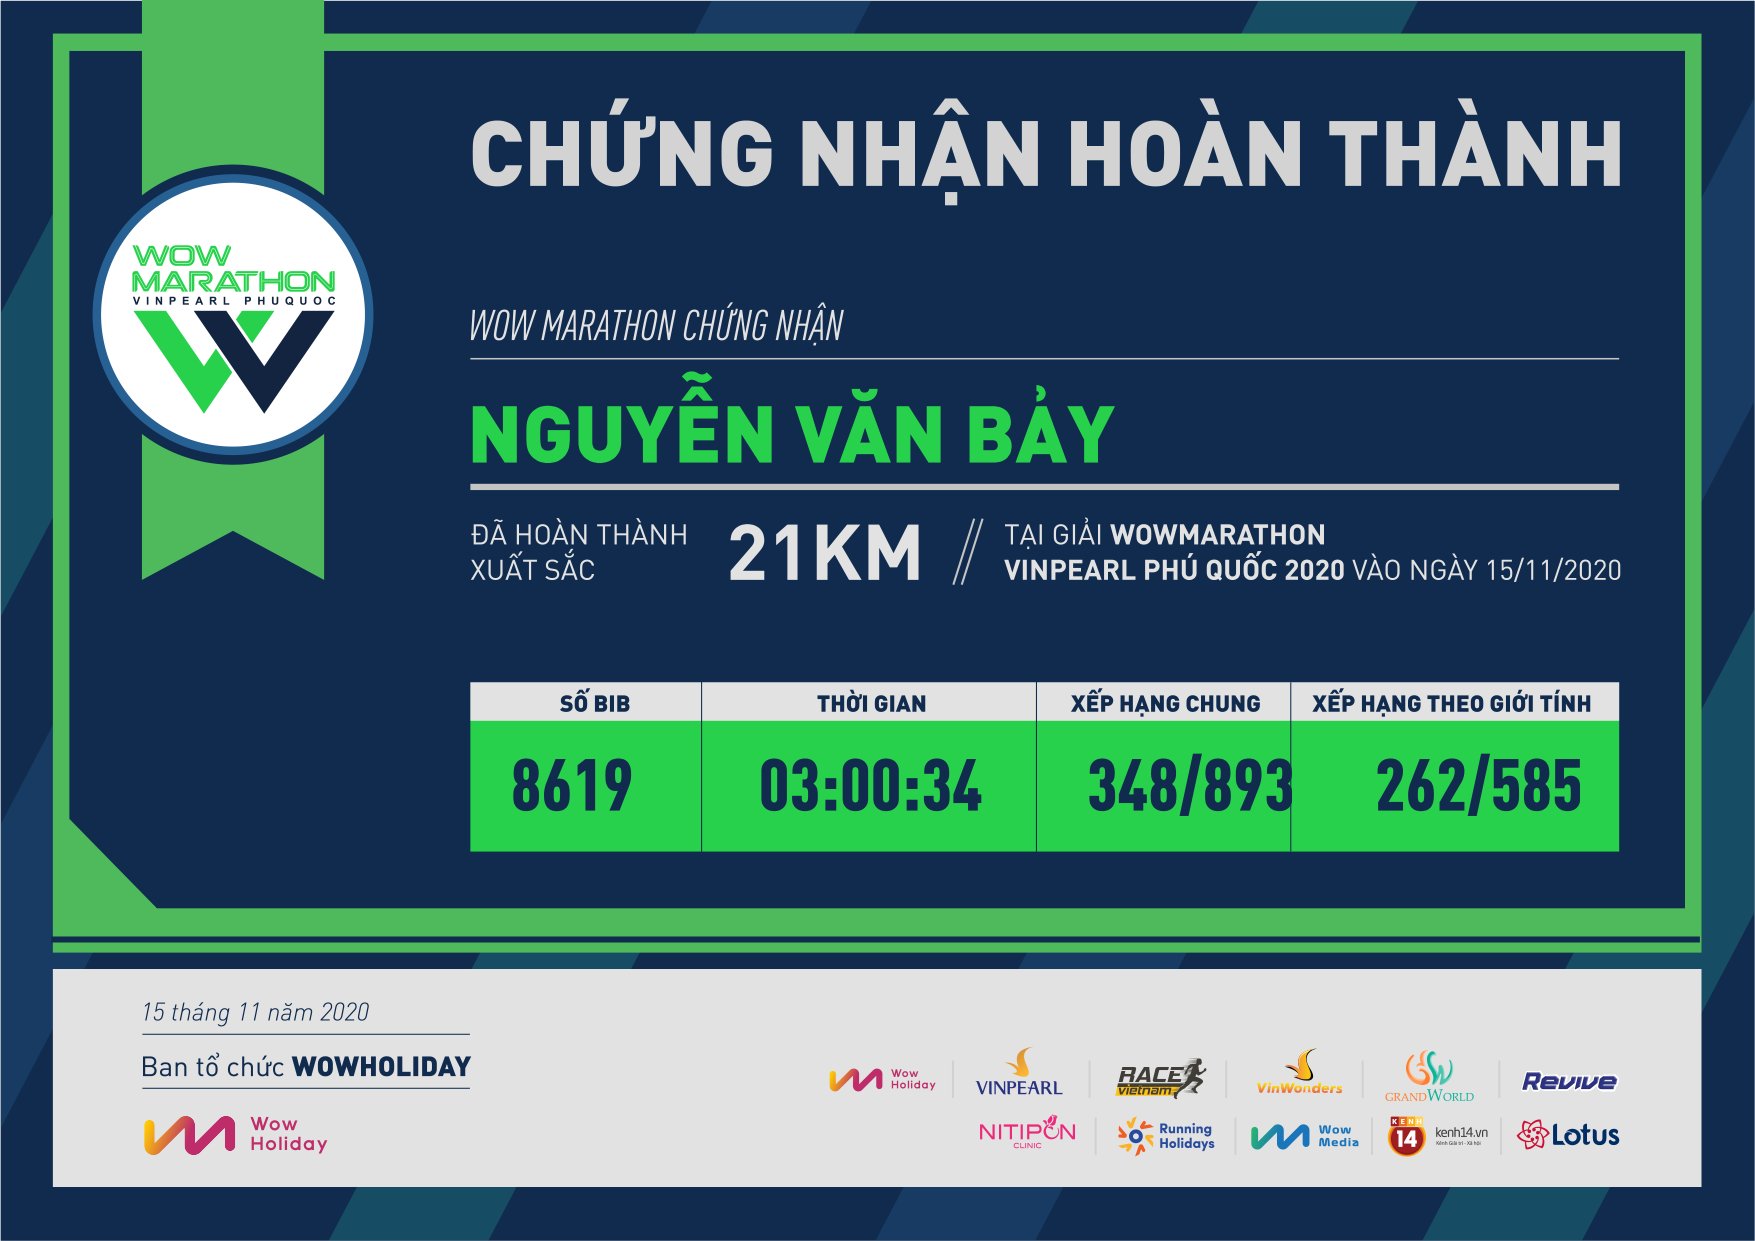 8619 - Nguyễn Văn Bảy